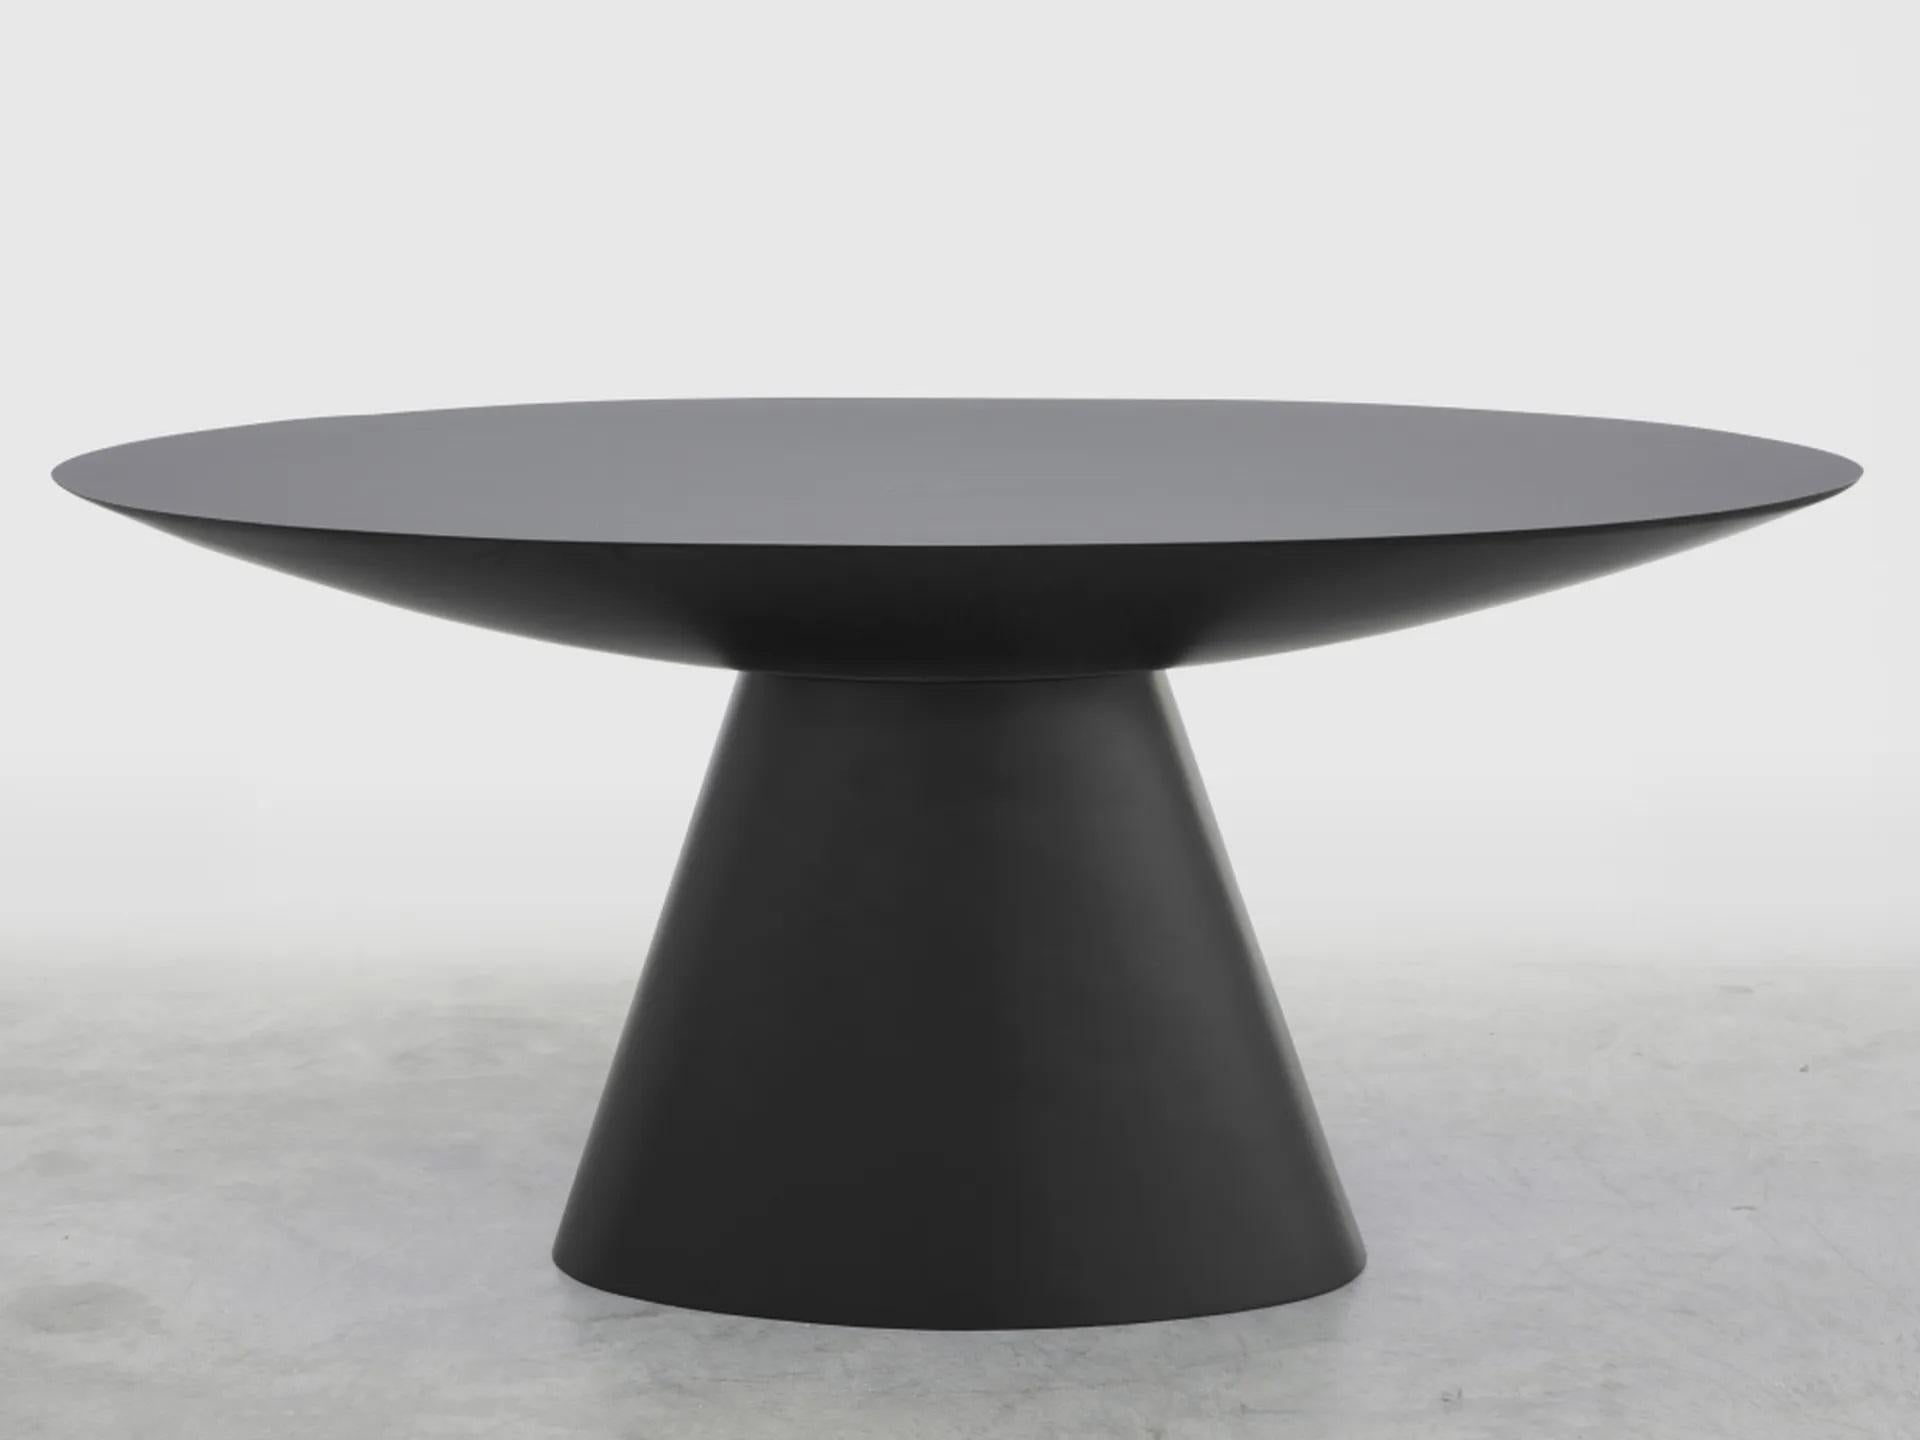 Table basse Slab d'Imperfettolab
2020
Dimensions : 179 x 99 x H 74
Matériaux : Fibre de verre
Disponible en noir et blanc.

Géométrie pure pour cette table qui révèle un plateau de forme ovale. Une ellipse spacieuse surélevée à partir d'une base